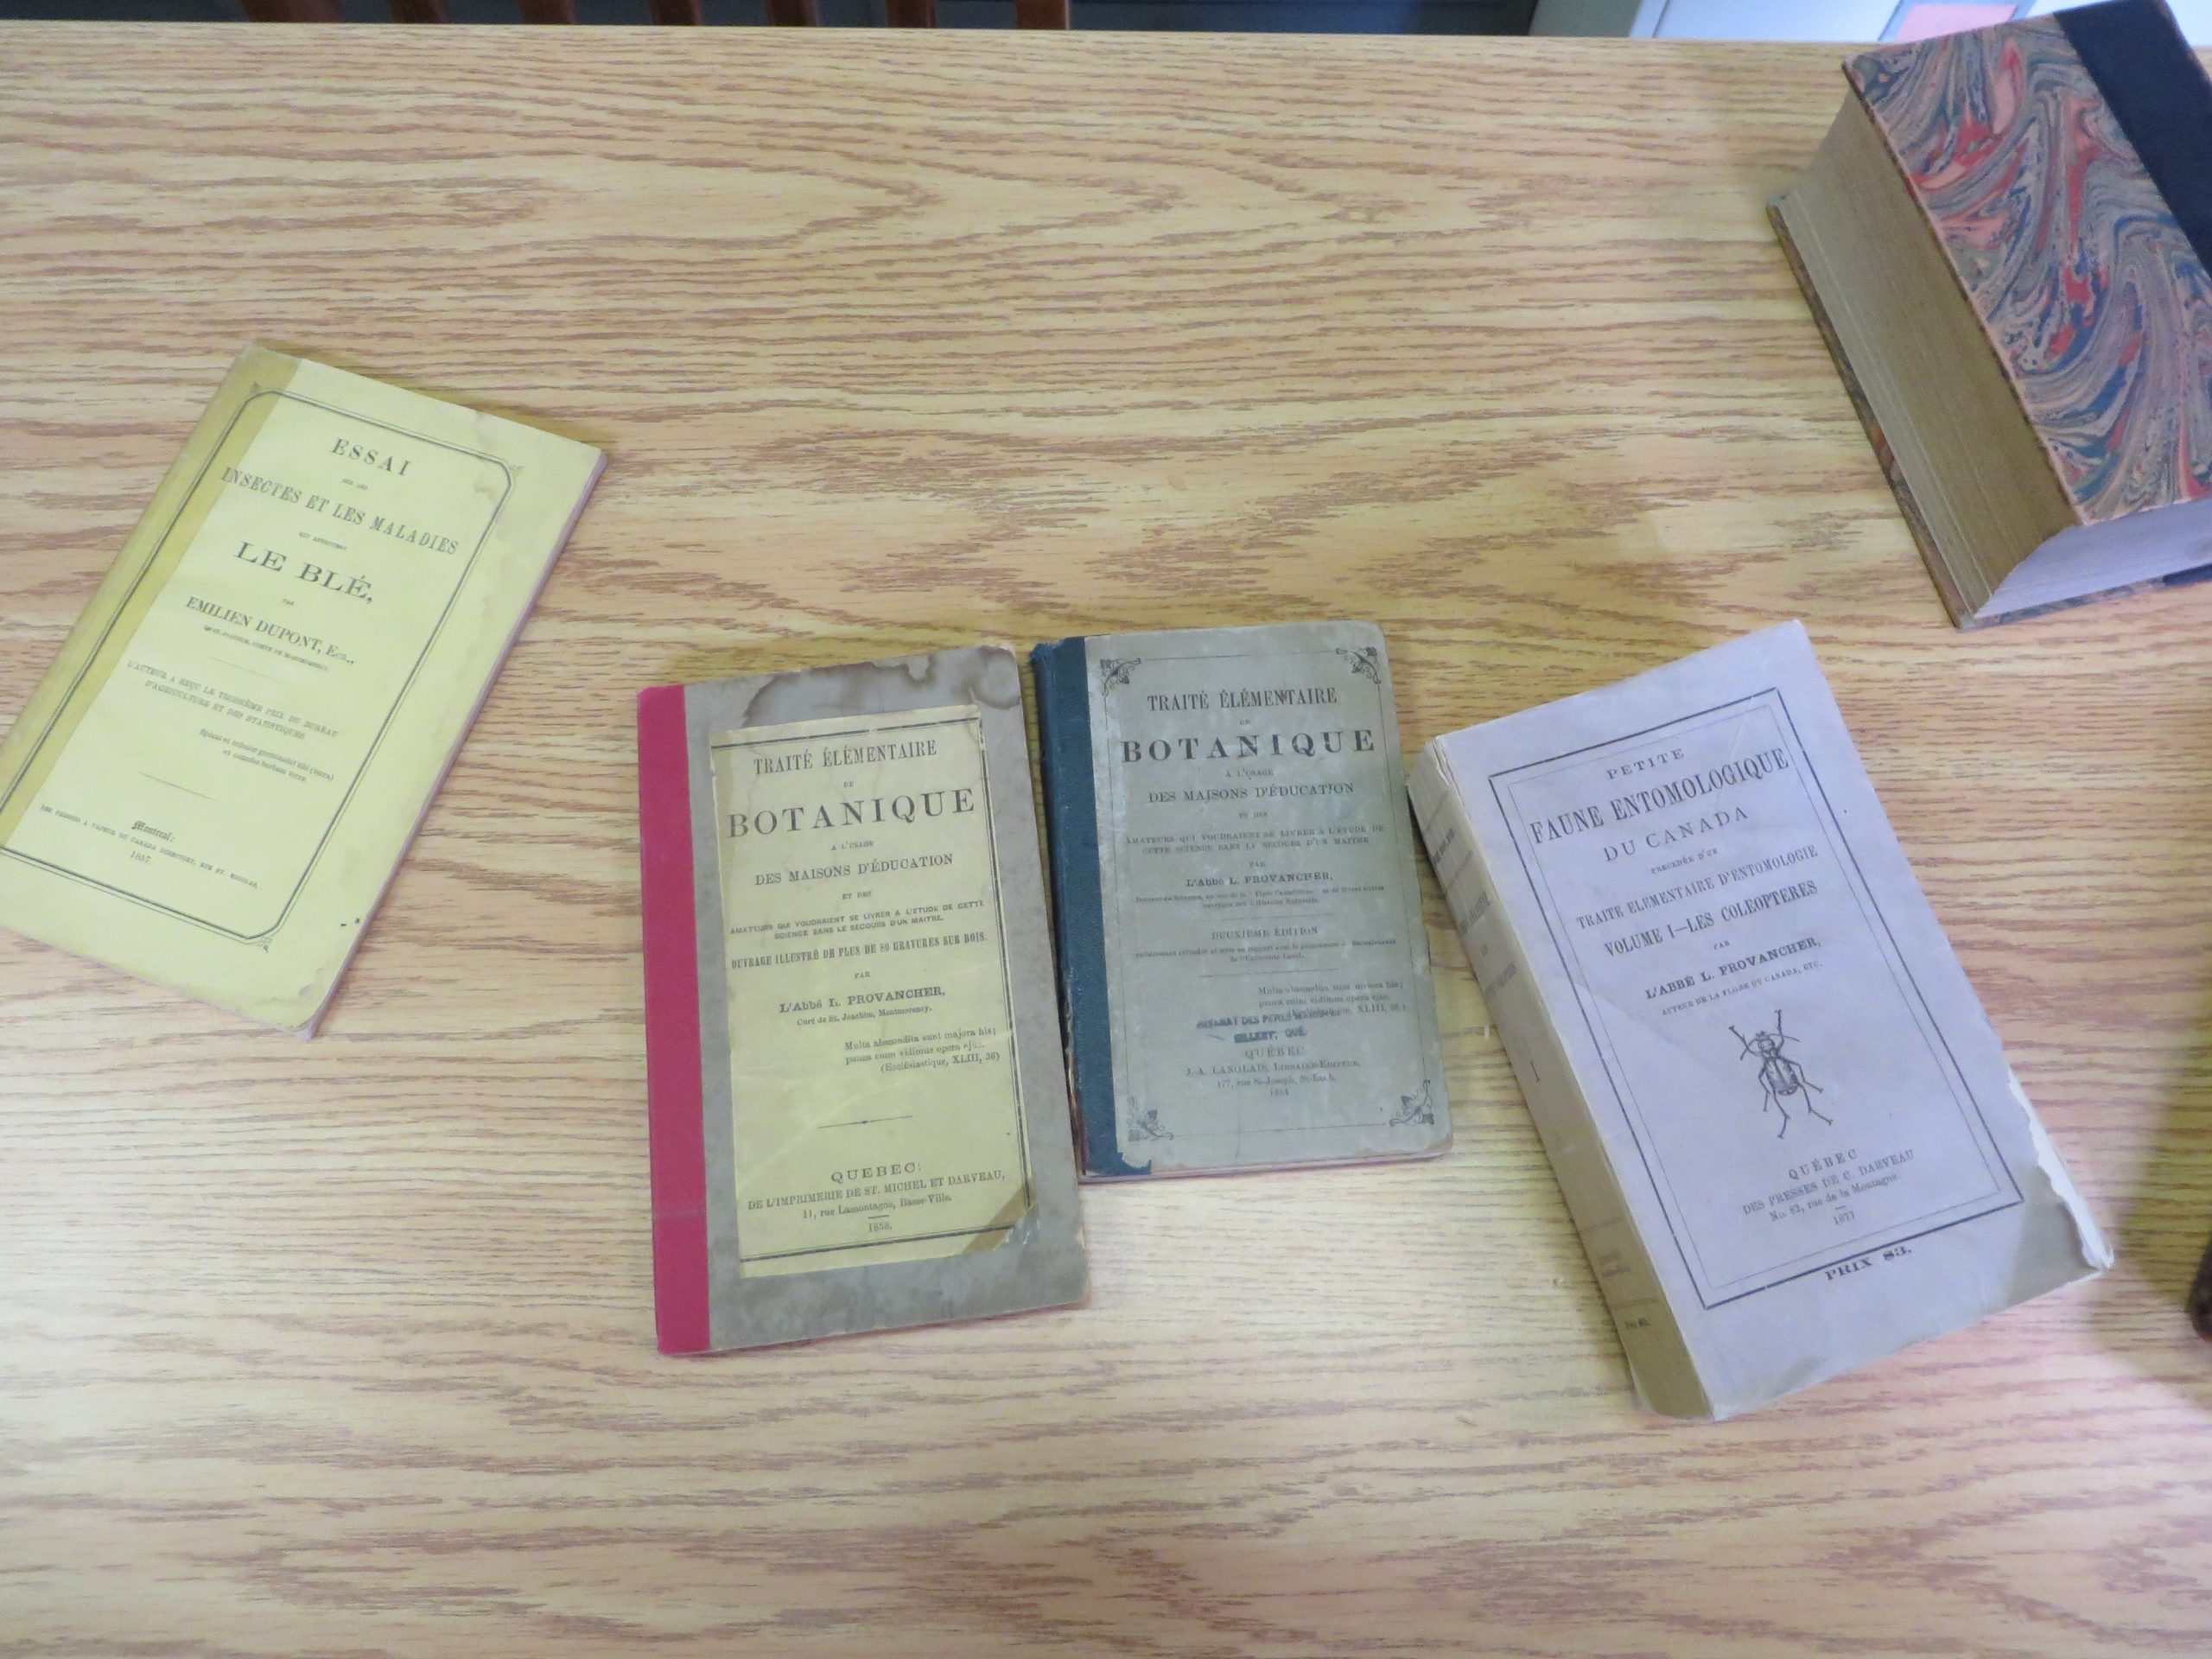 Quelques publications de l'abbé Provancher. Photo: Réhaume Courtois.